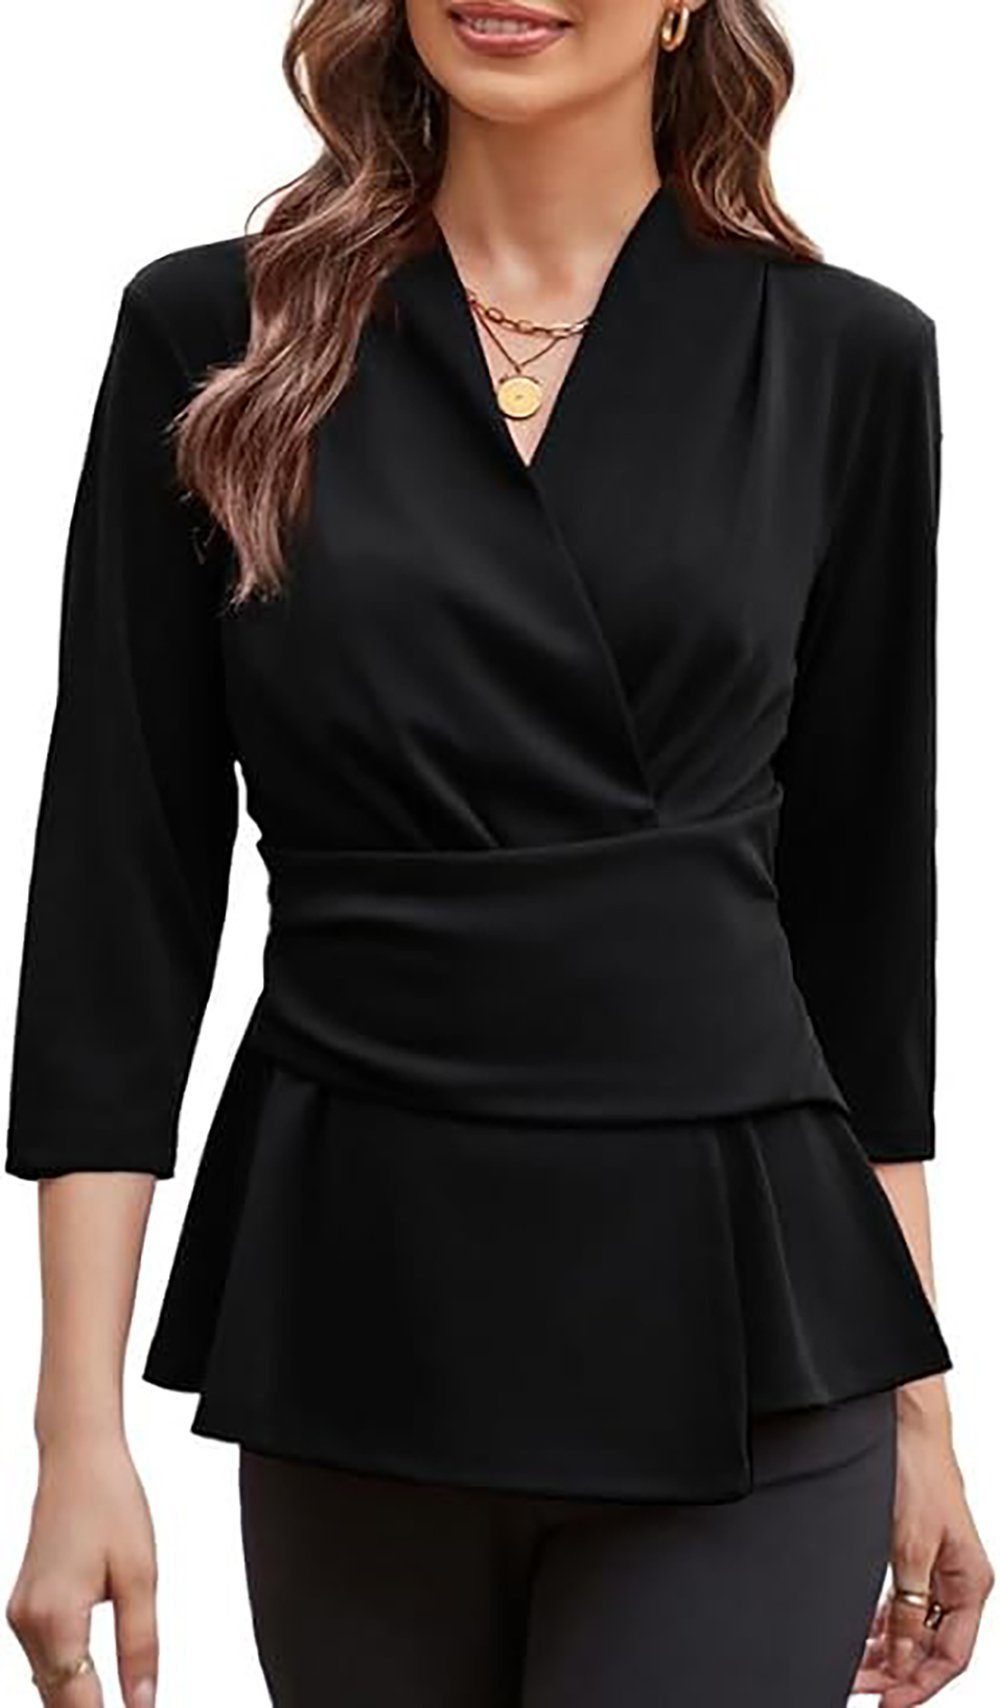 ZWY Hemdbluse Elegante Bluse für Frauen, Wickeloberteil mit sieben Ärmeln V-Ausschnitt Slim Shirt Top, Work Business Top